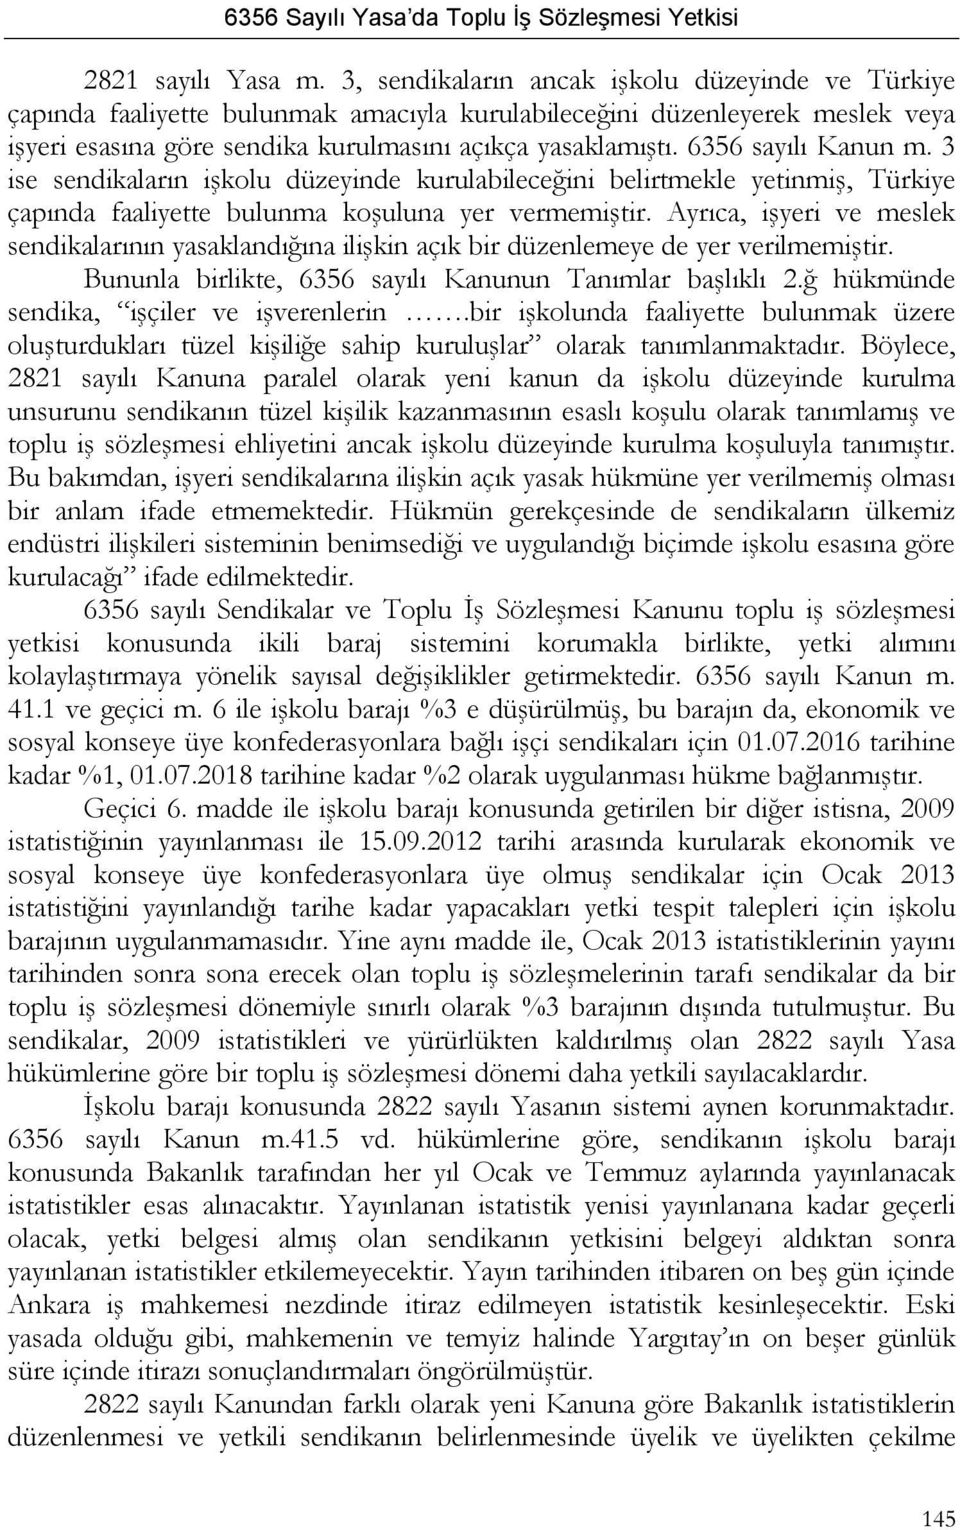 6356 sayılı Kanun m. 3 ise sendikaların işkolu düzeyinde kurulabileceğini belirtmekle yetinmiş, Türkiye çapında faaliyette bulunma koşuluna yer vermemiştir.